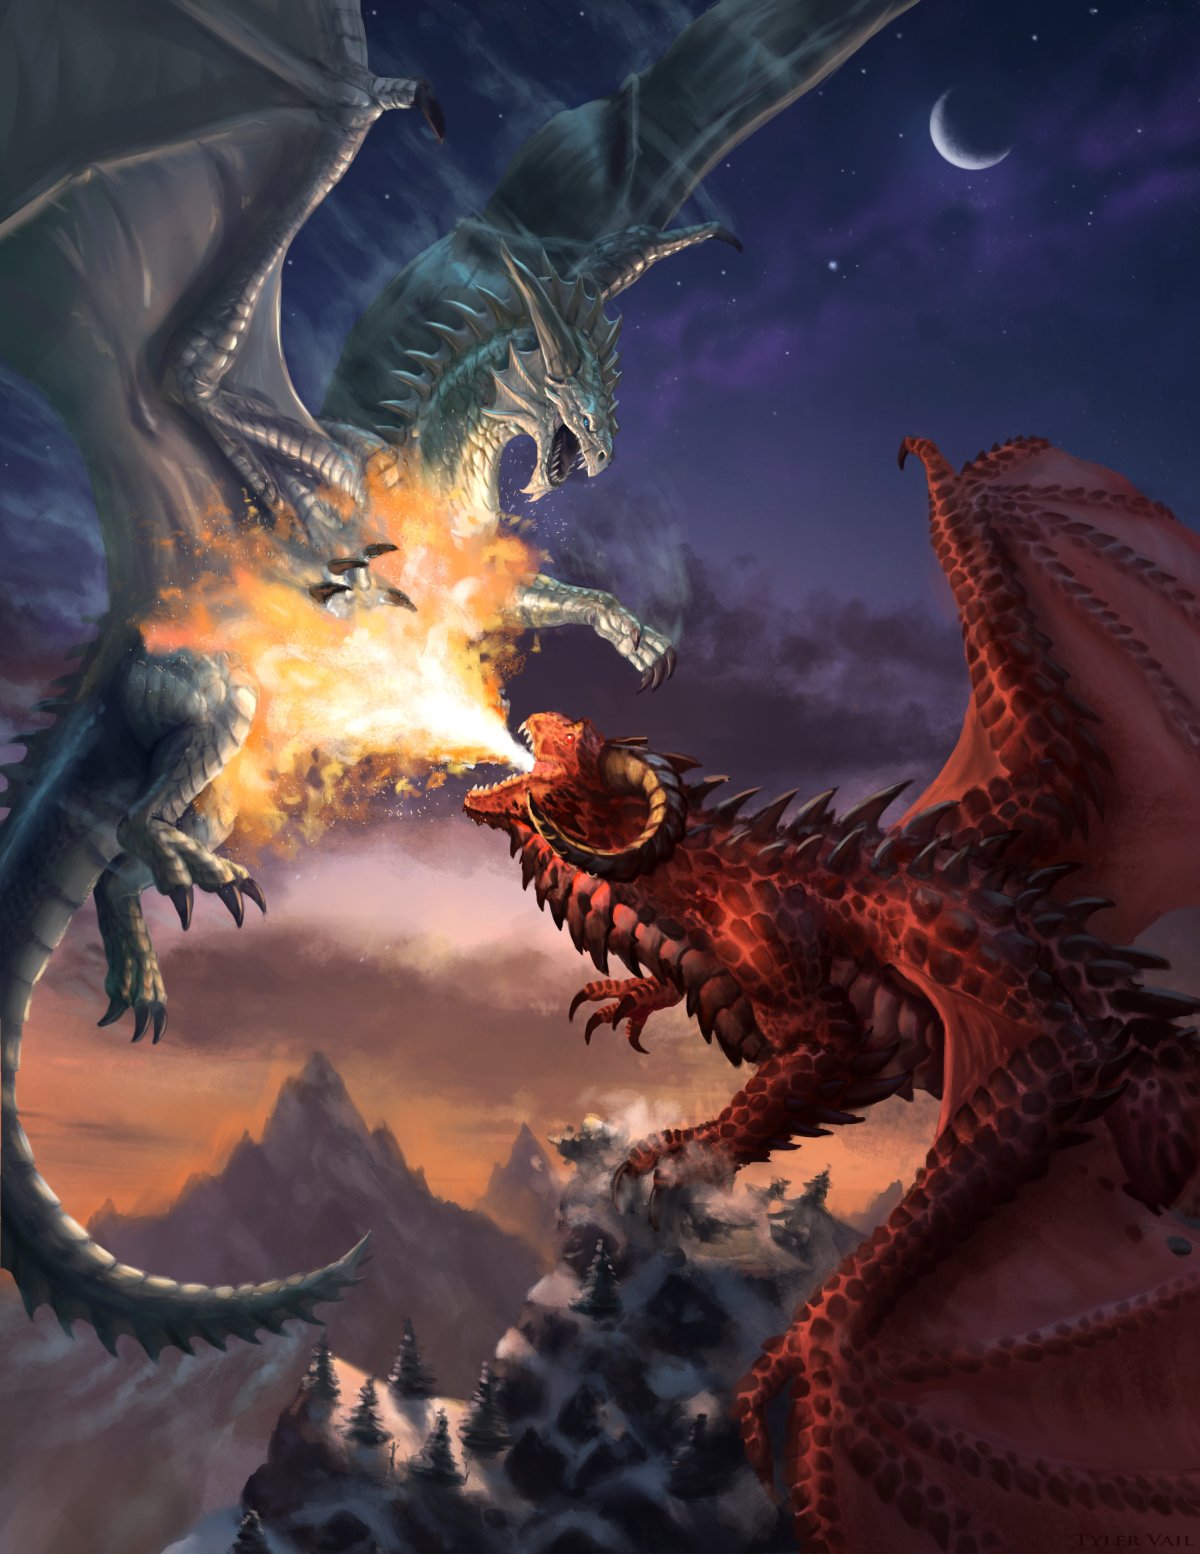 Битва с драконом